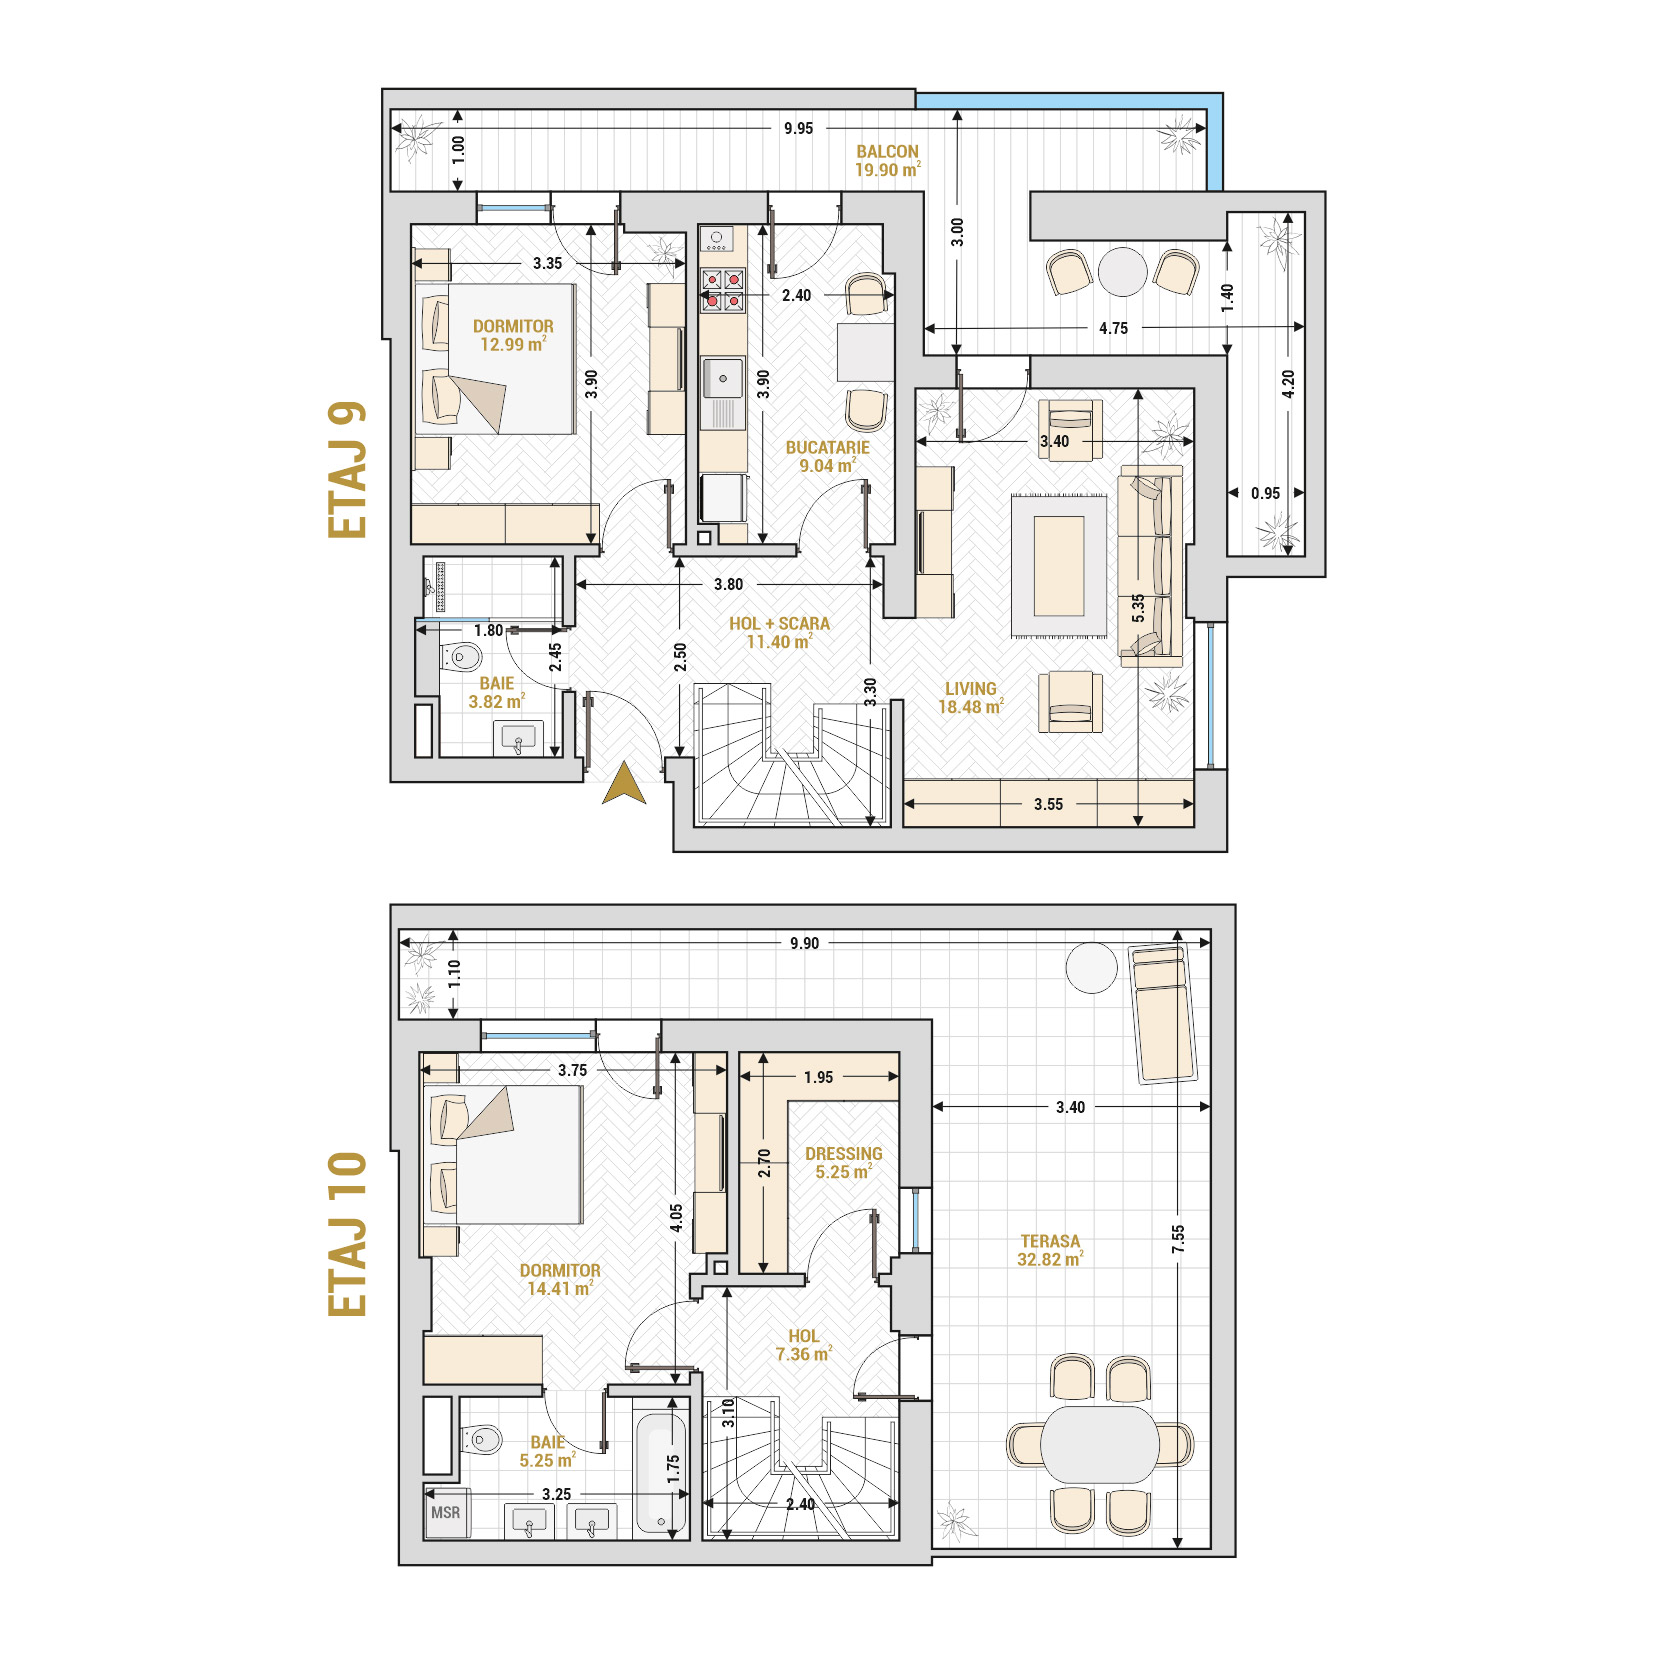 Penthouse 3 Camere Tip 2 Corp 1 - Drumul Taberei Residence - Apartamente de vanzare Bucuresti - Suprafata utila totala - 140.72 mp